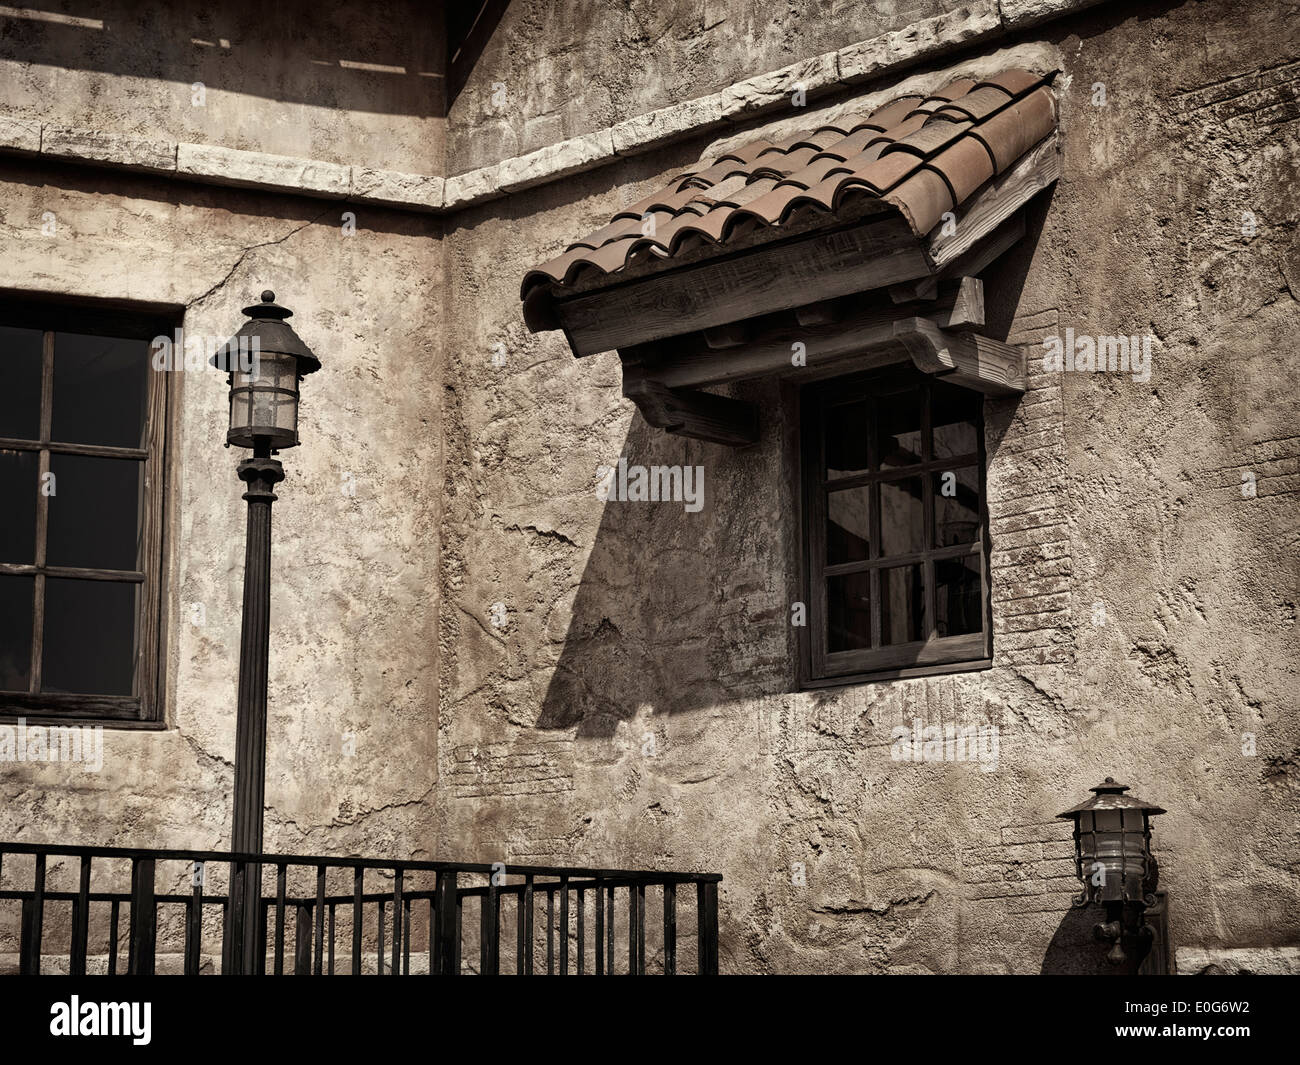 Vieille maison rustique mur avec une fenêtre, fragmeny d'architecture vénitienne, sépia Banque D'Images